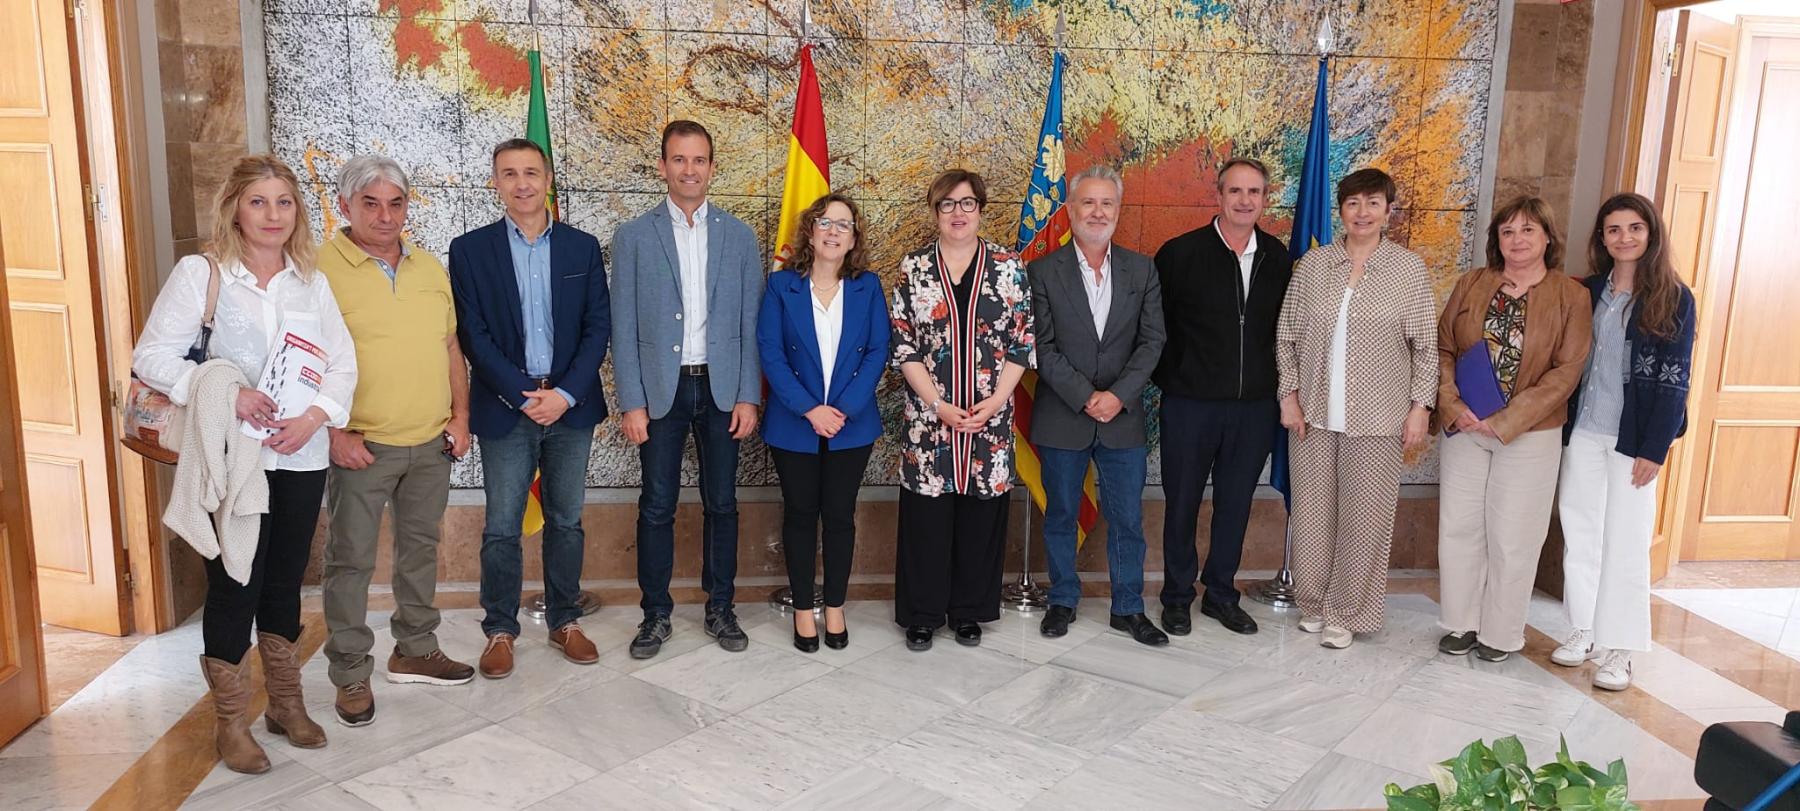 La provincia de Castellón recibirá más de 1.500.000 millones de euros del Programa de Fomento de Empleo Agrario